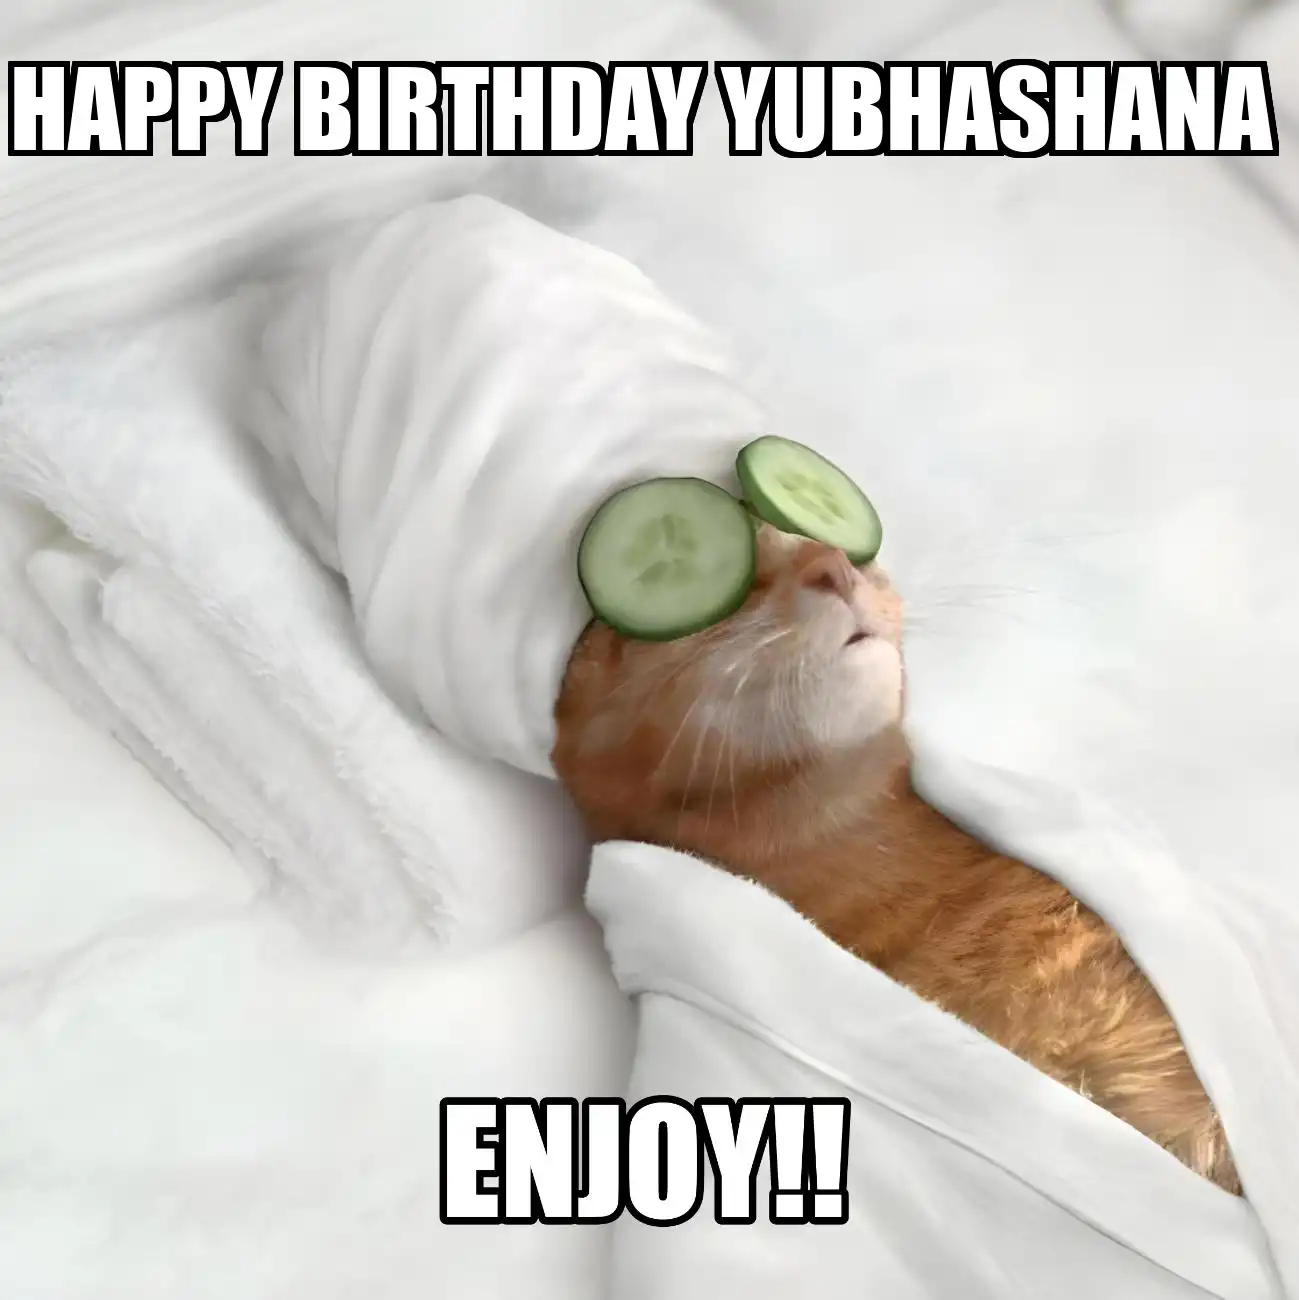 Happy Birthday Yubhashana Enjoy Cat Meme